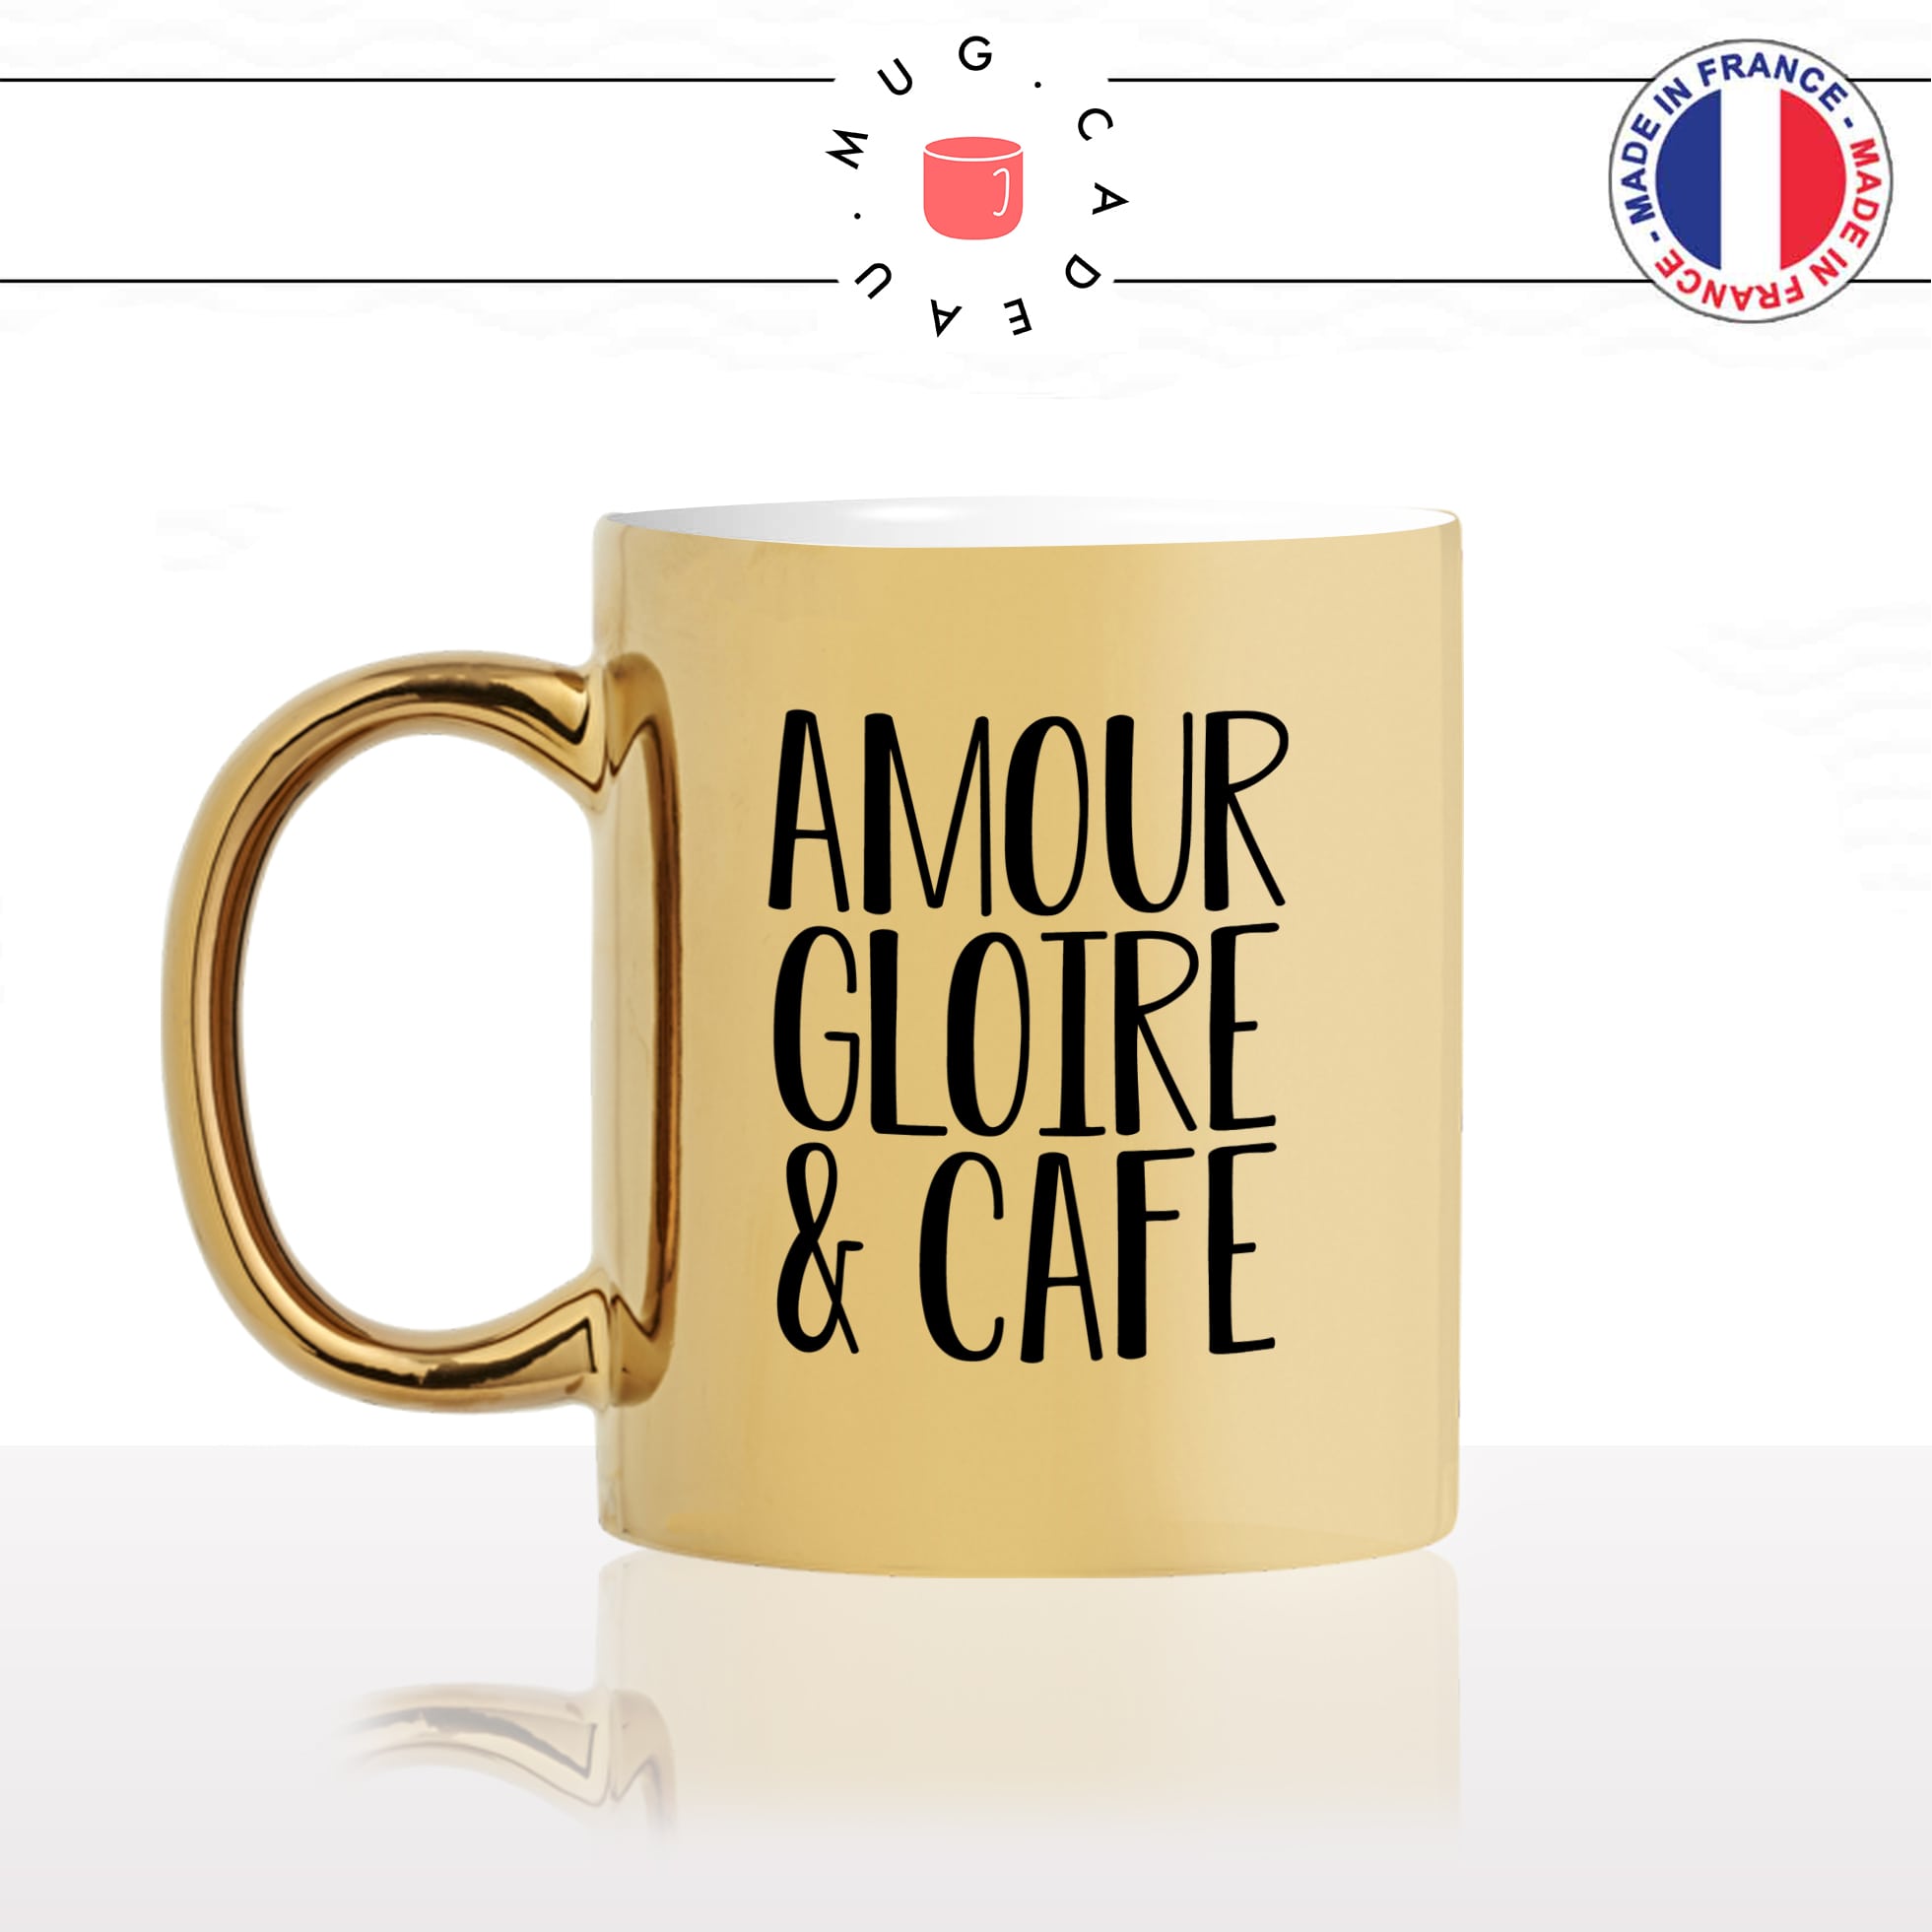 mug-tasse-doré-or-gold-amour-gloire-et-cafes-matinal-matin-reveil-week-end-humour-boulot-idée-cadeau-original-personnalisé-café-thé-min